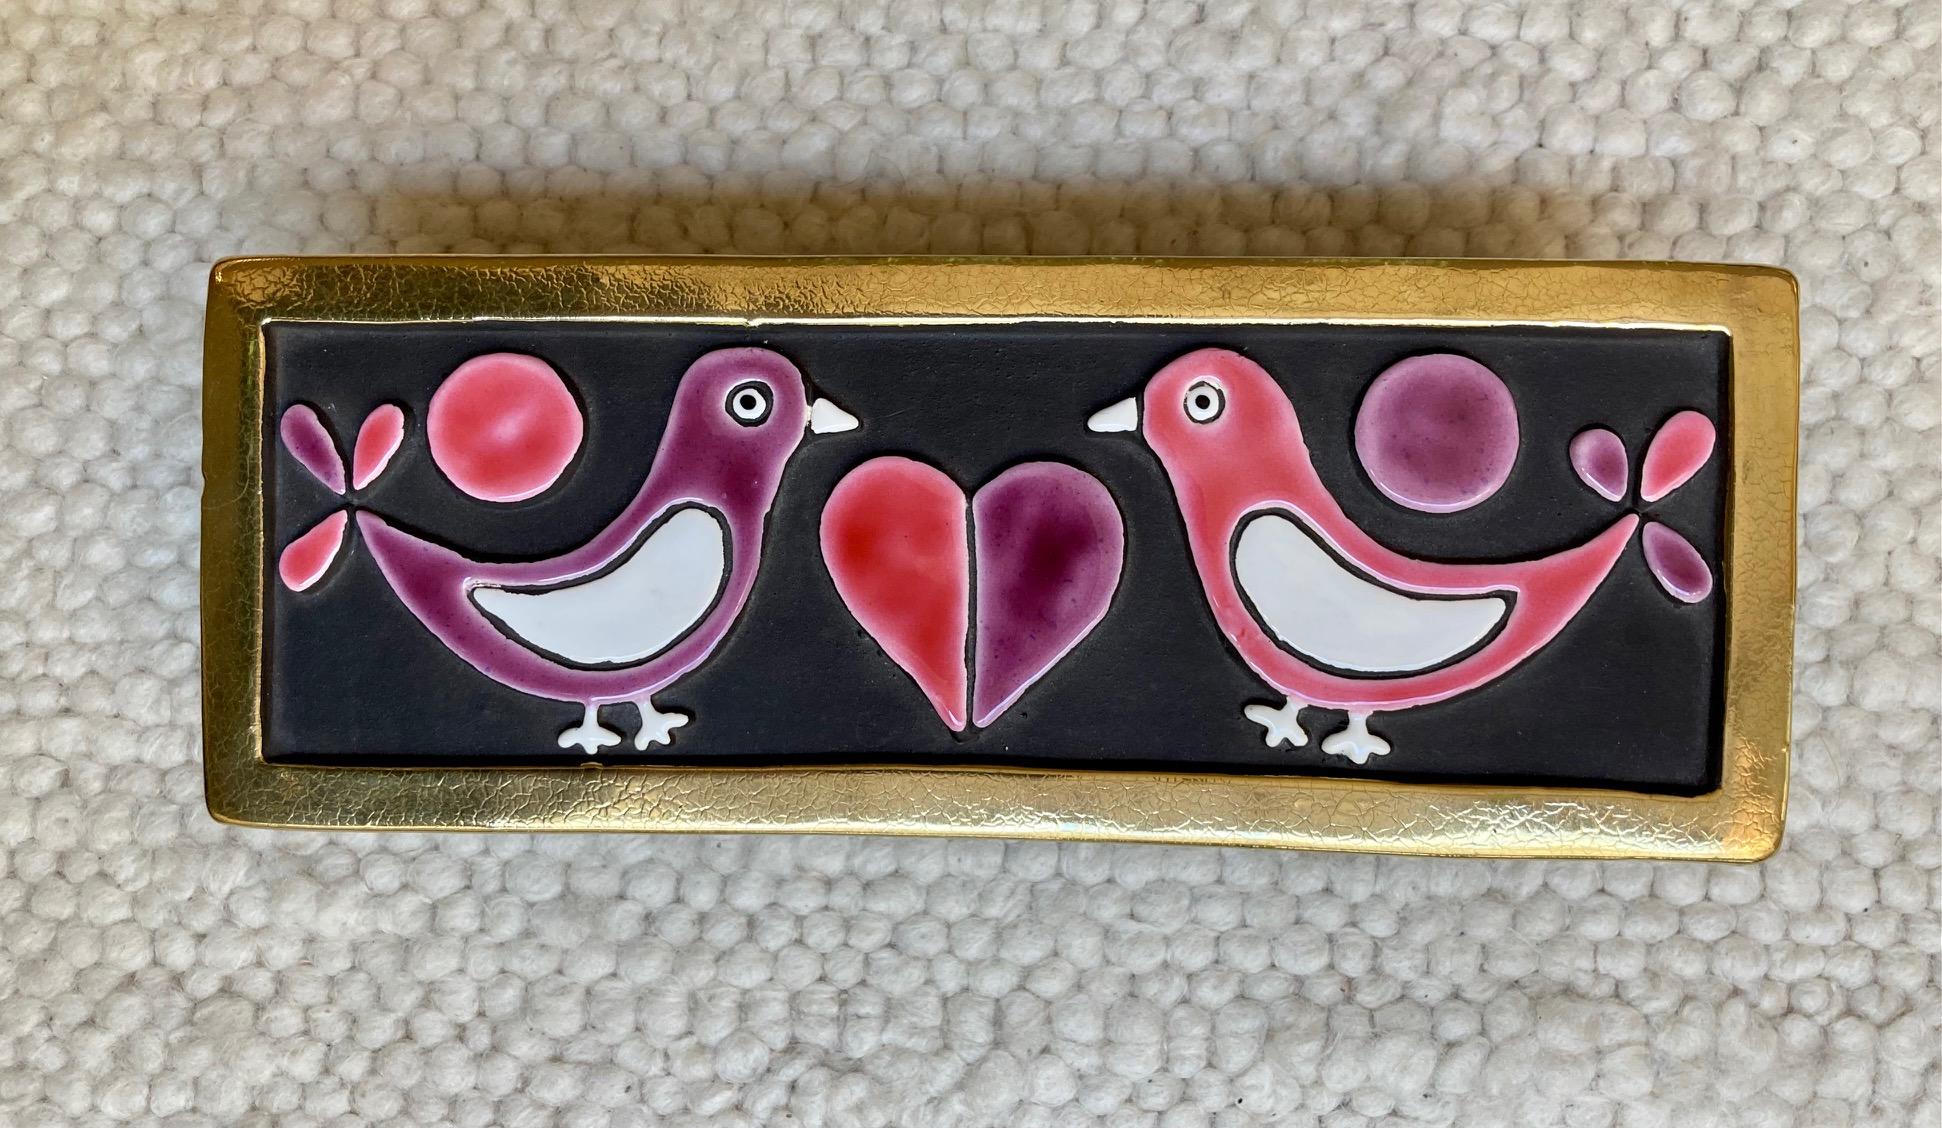 Une boîte en céramique émaillée représentant deux colombes se faisant face et un cœur au milieu.
Faïence gaufrée émaillée en rose, violet et blanc sur fond noir. 
Bords dorés craquelés. 
la base de la boîte est en bois
Modèle 